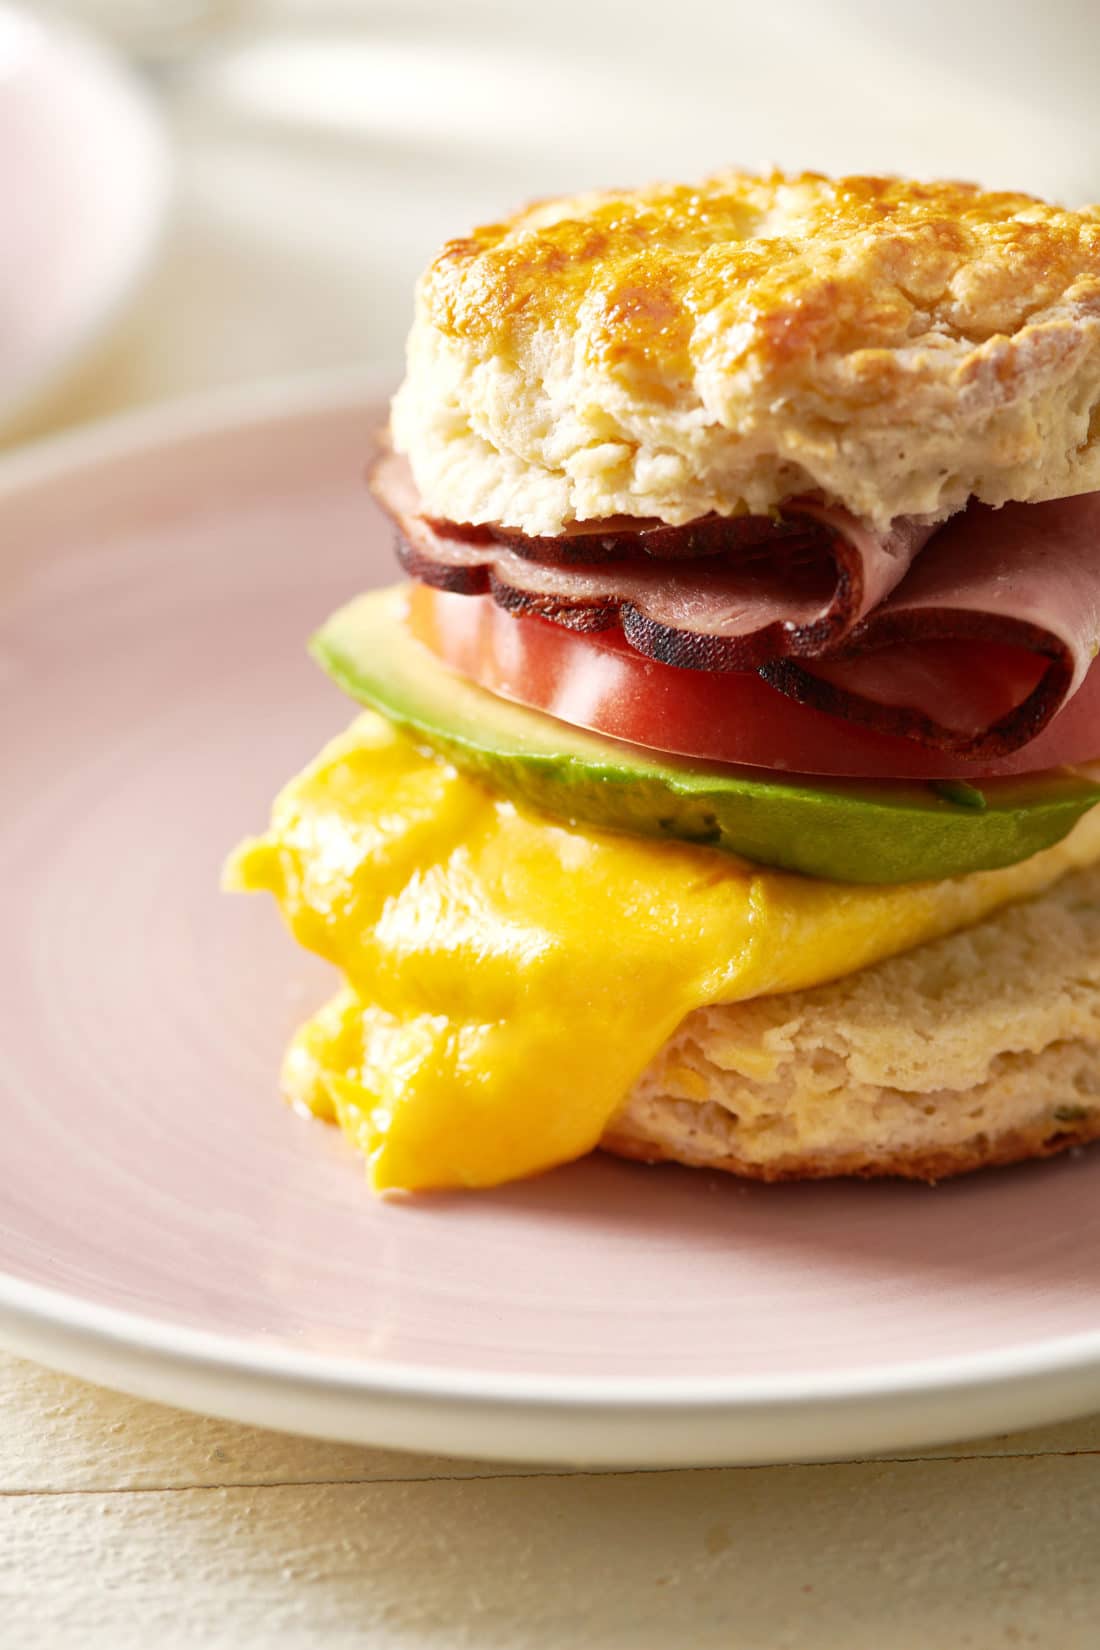 Biscuit Breakfast Sandwich on a plate.